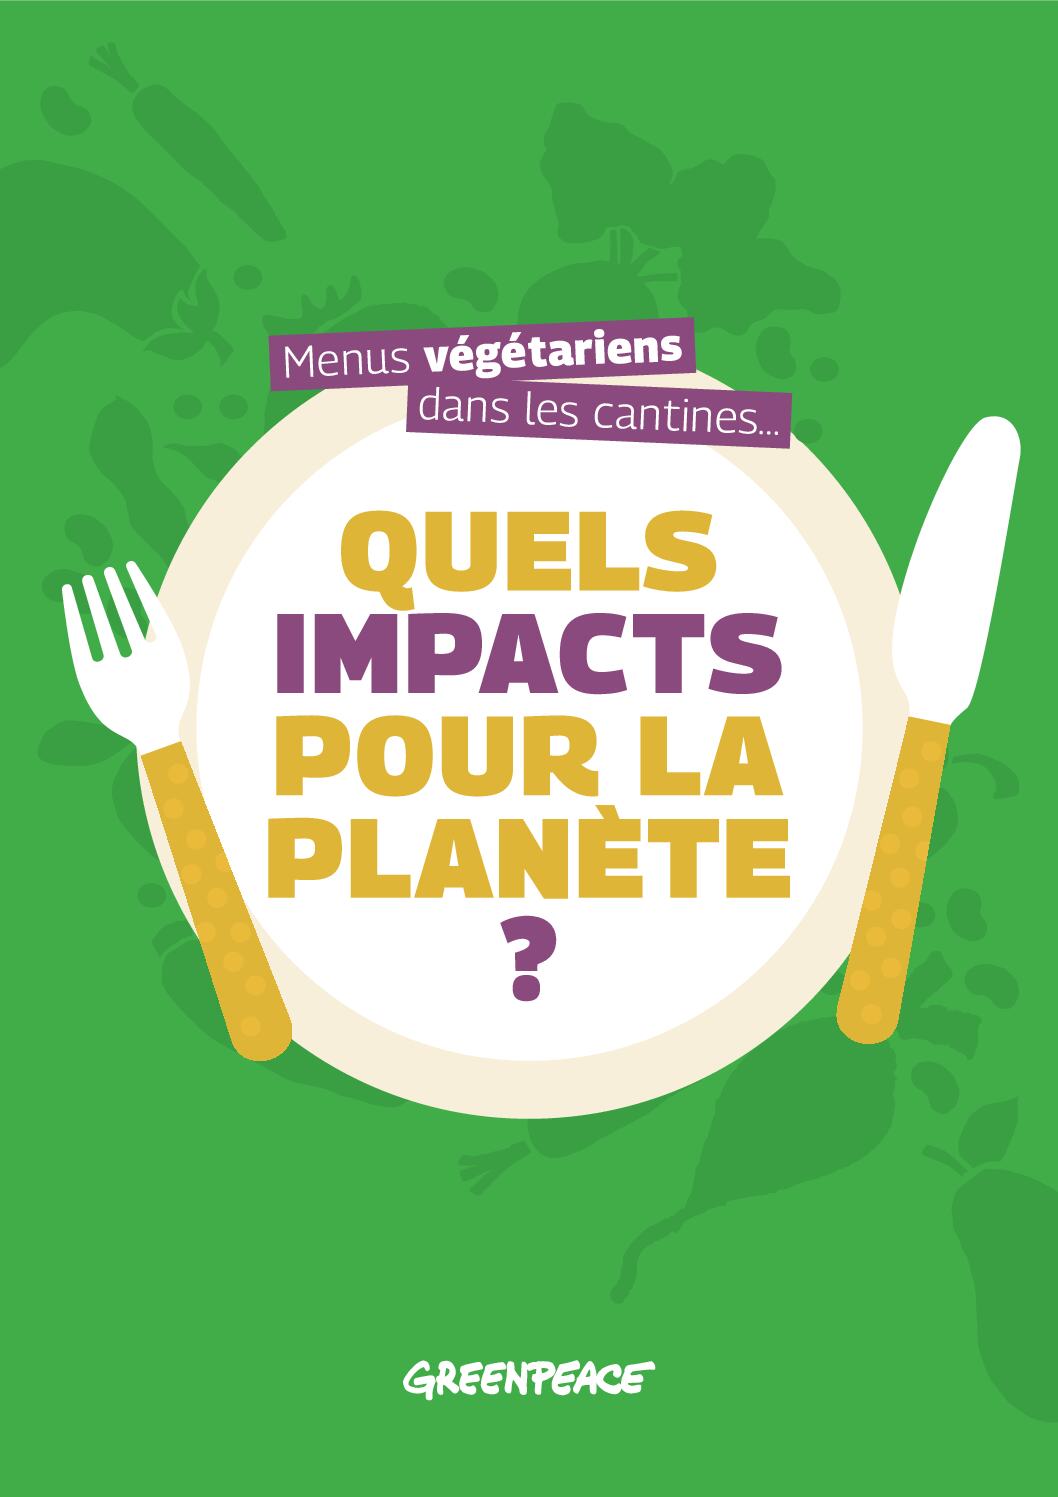 Menus végétariens dans les cantines : quels impacts pour la planète ?